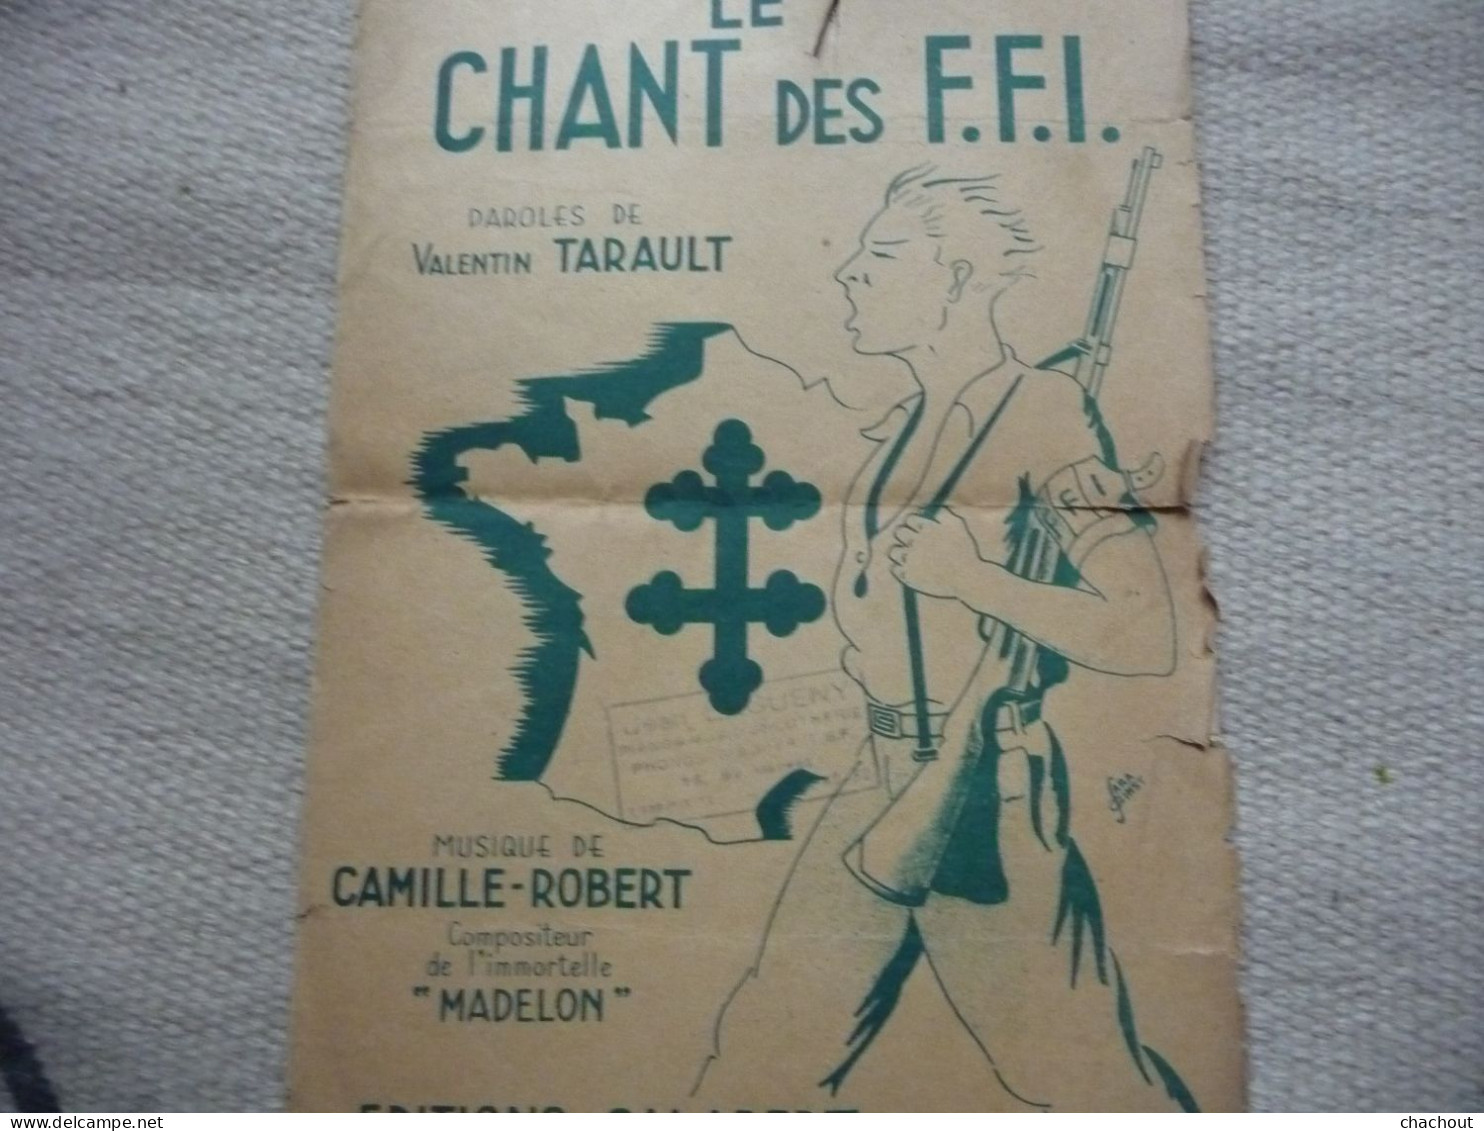 Le Chant Des FFI Paroles De Valentin TARAULT - Dokumente